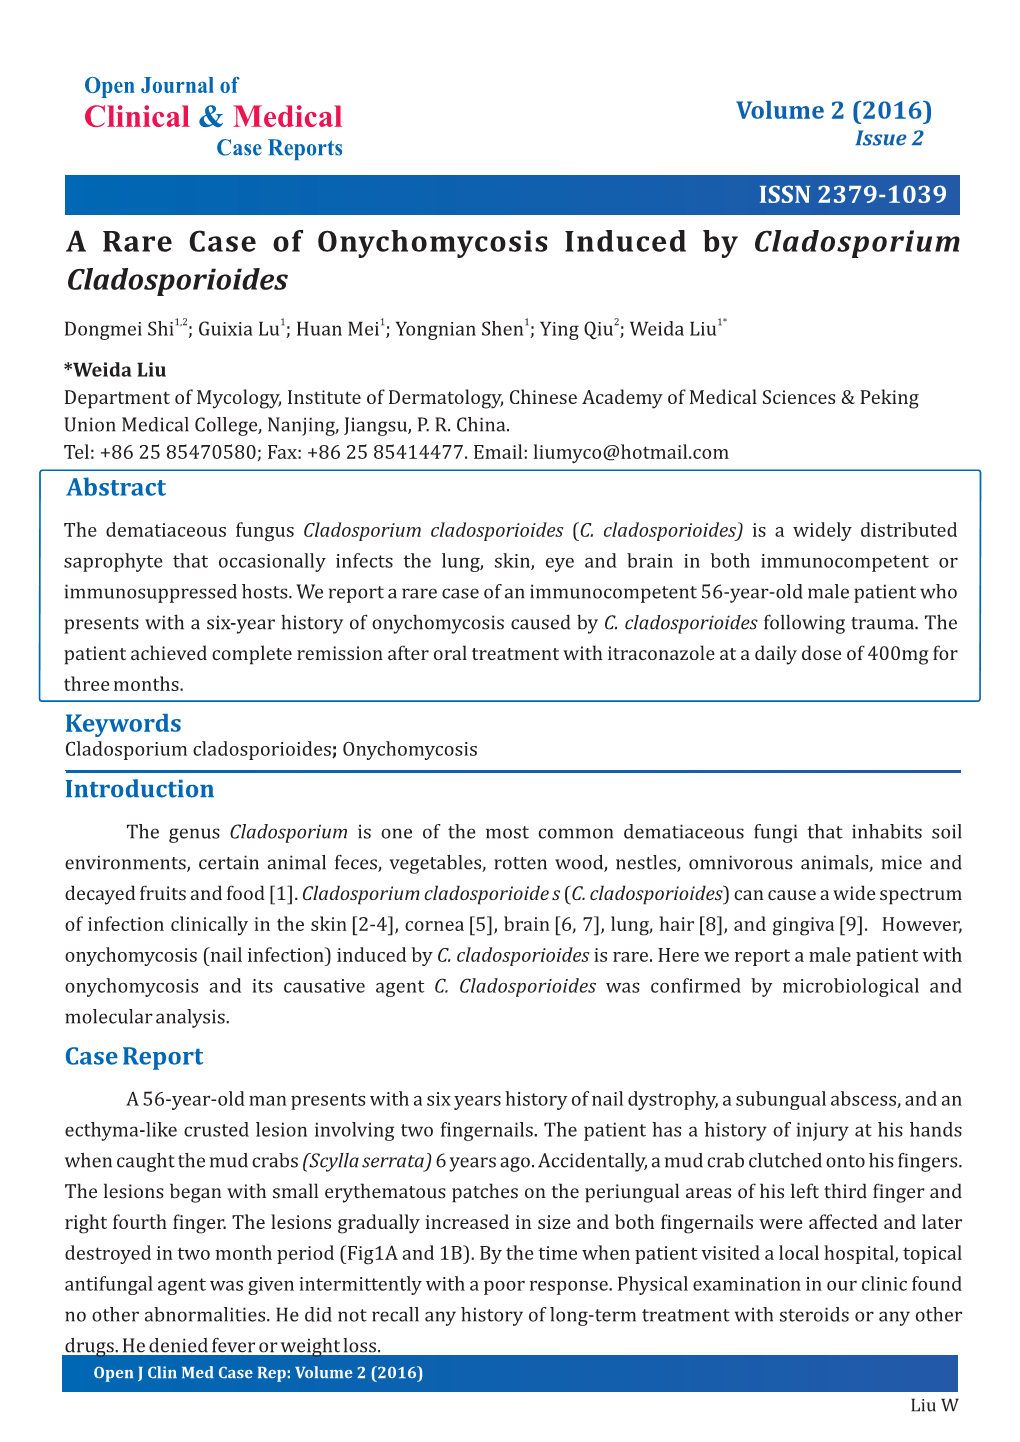 A Rare Case of Onychomycosis Induced by Cladosporium Cladosporioides